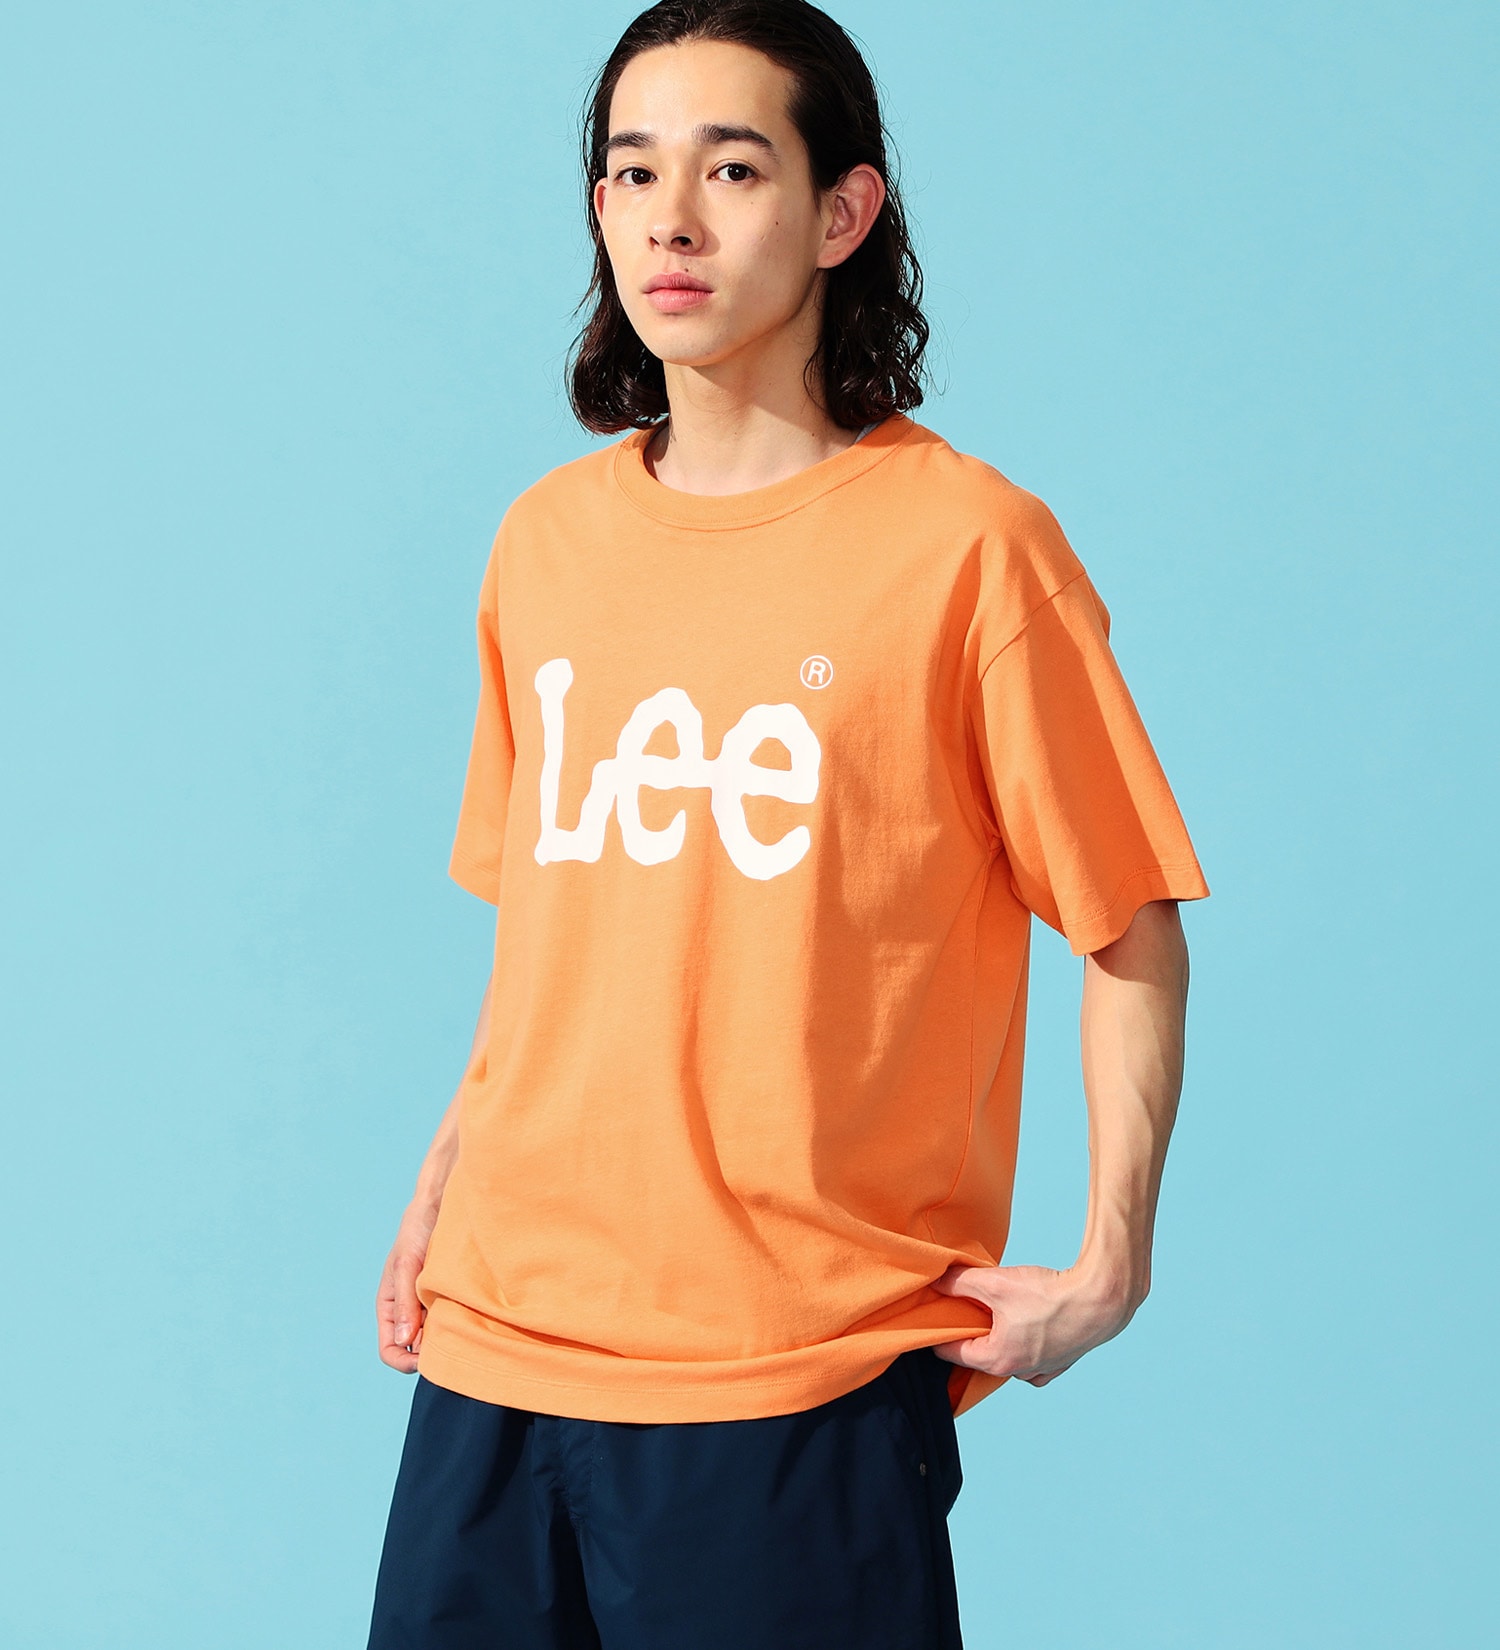 Lee(リー)のLee ロゴ ショートスリーブTee|トップス/Tシャツ/カットソー/メンズ|オレンジ